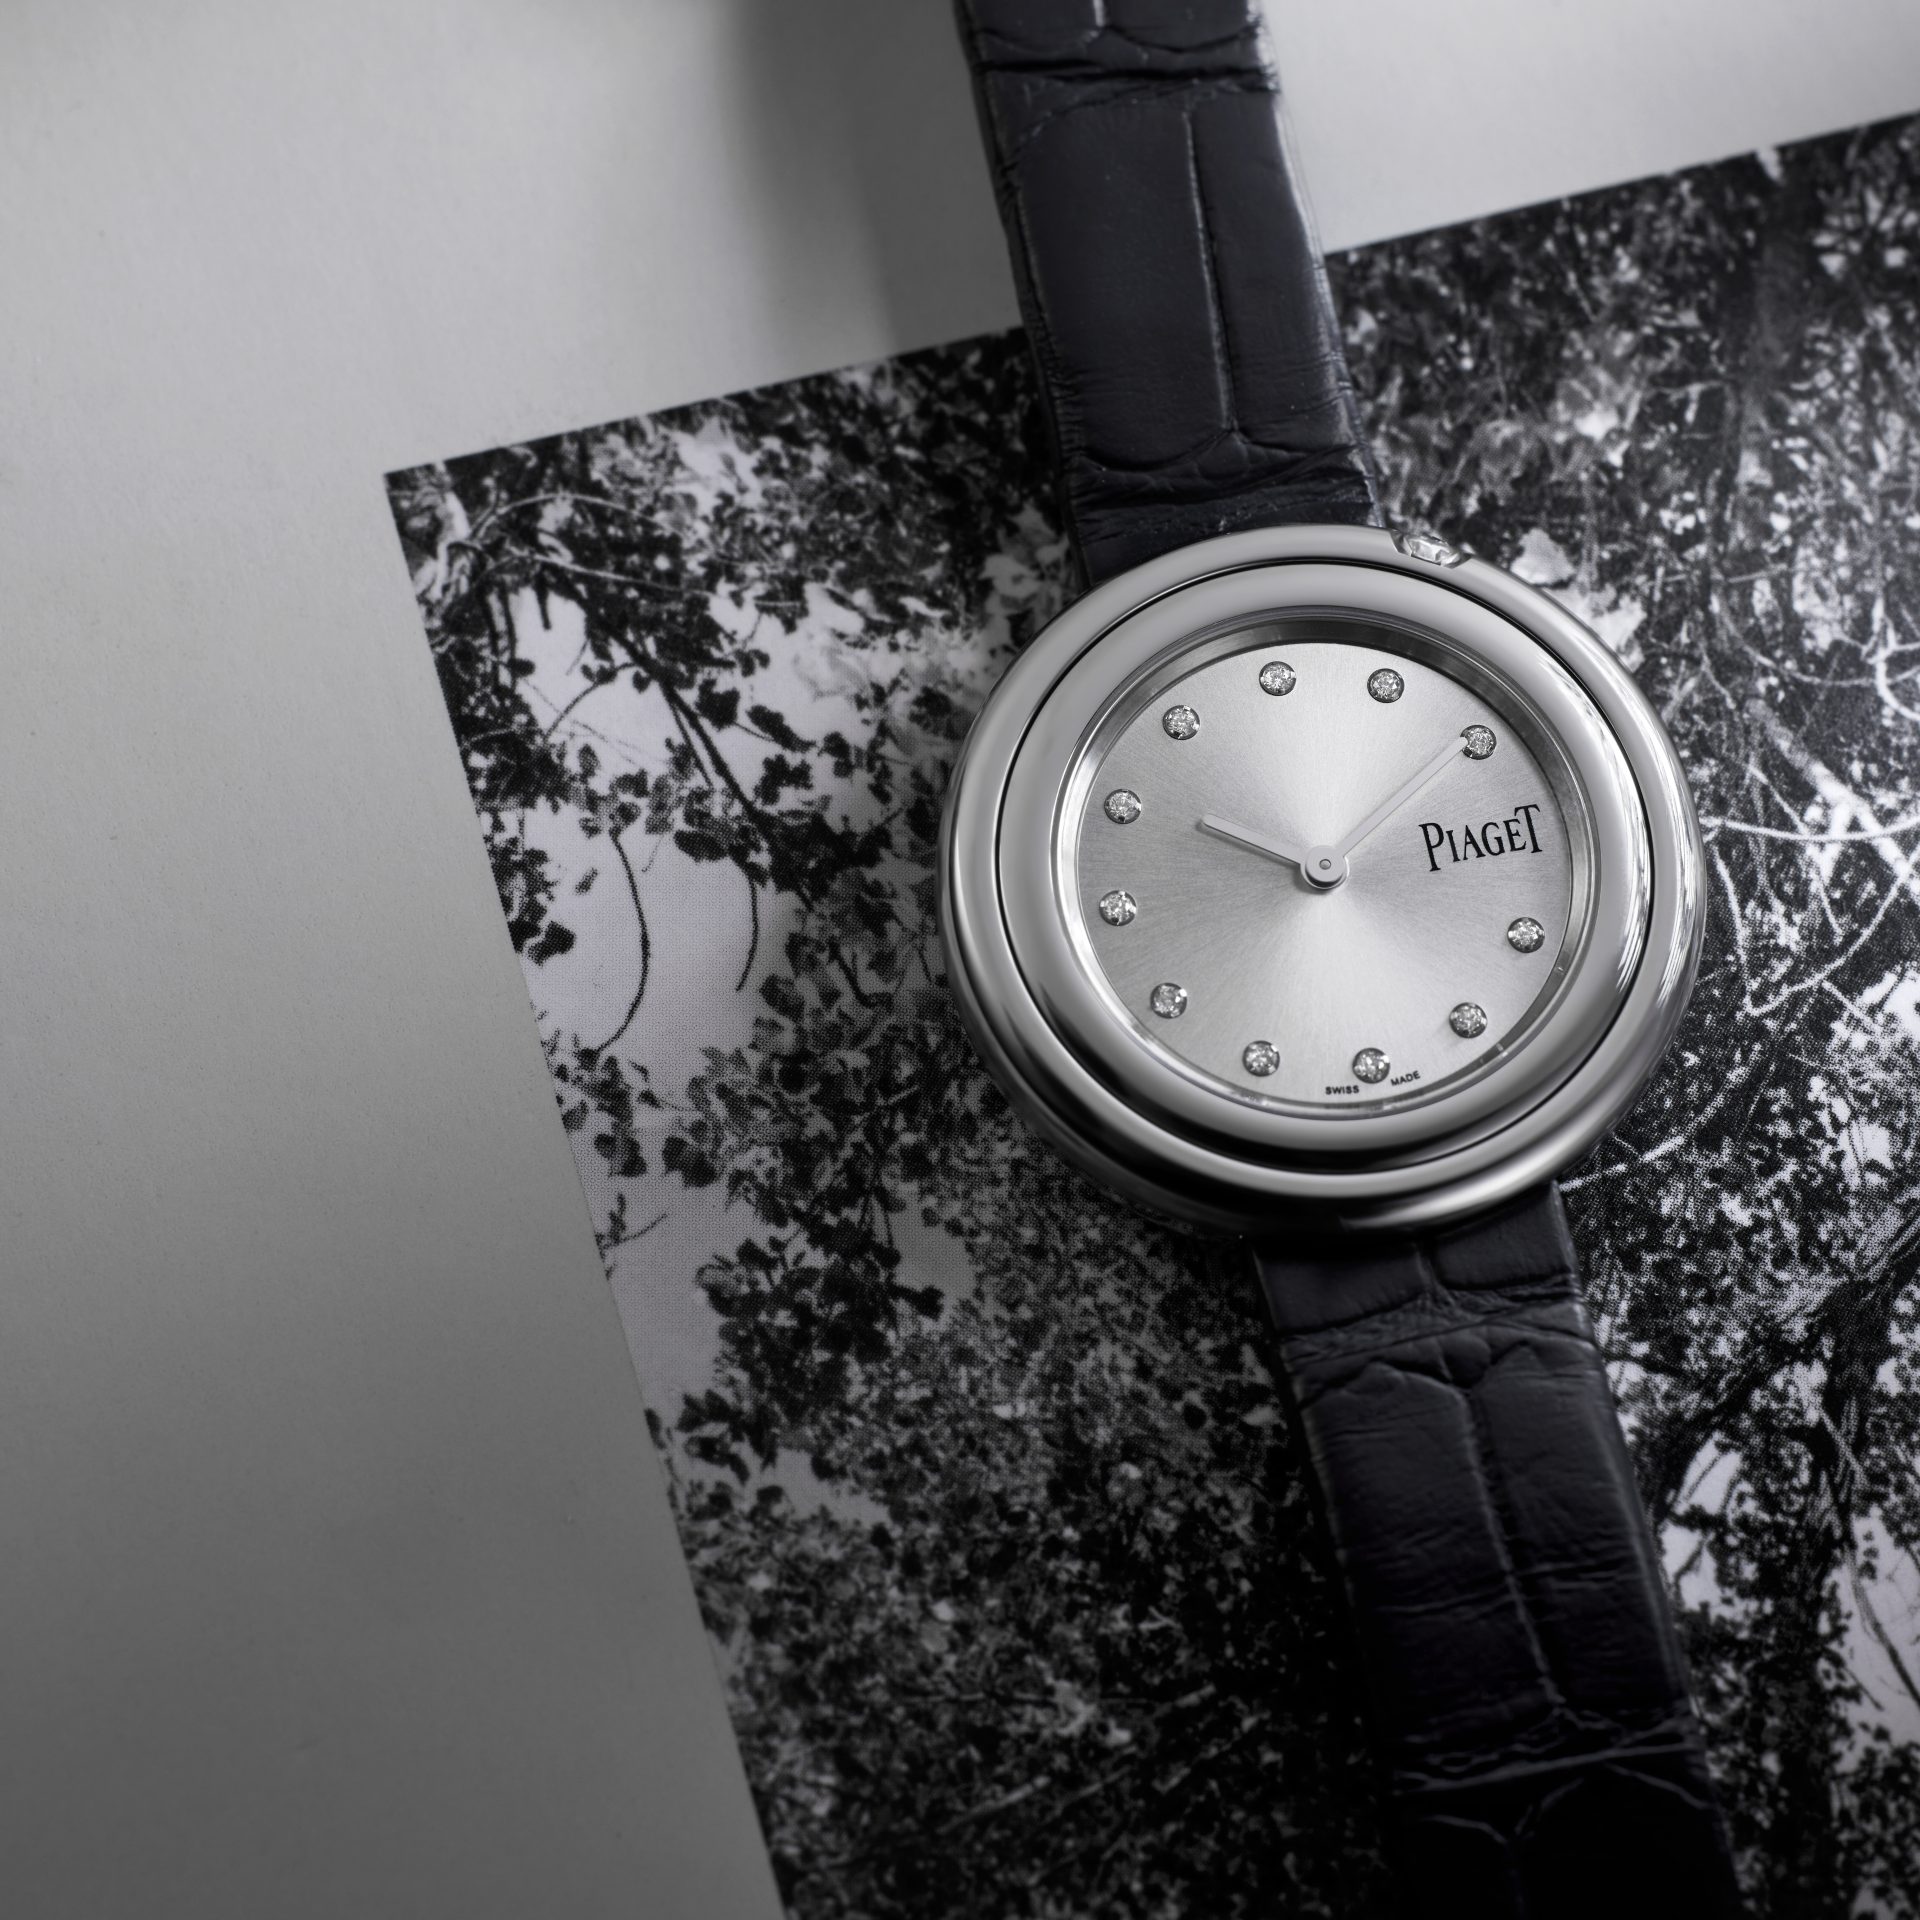 ピアジェのポセション ウォッチ【50歳記念の時計選び】 | AMARC